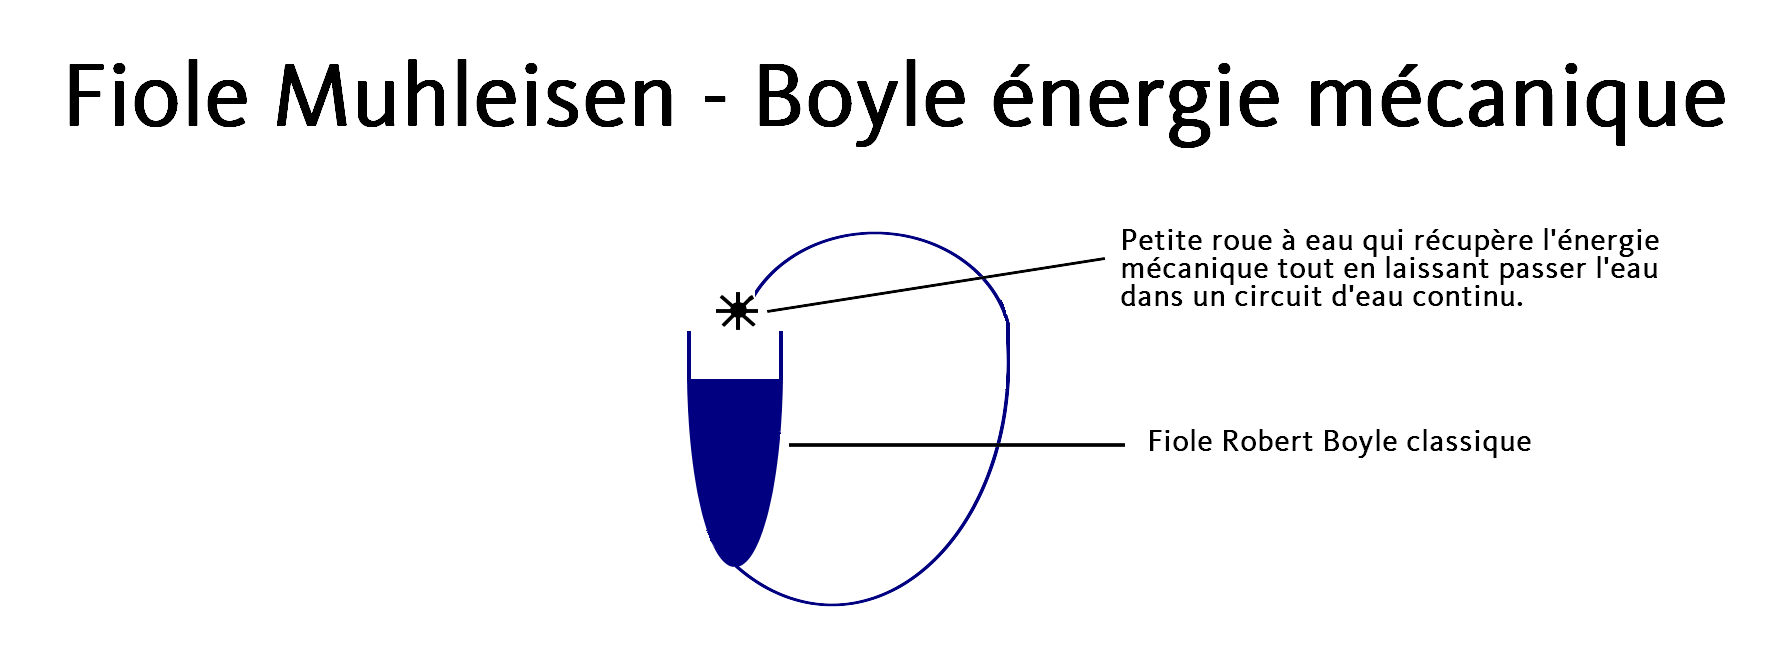 La fiole Muhleisen - Boyle énergie mécanique